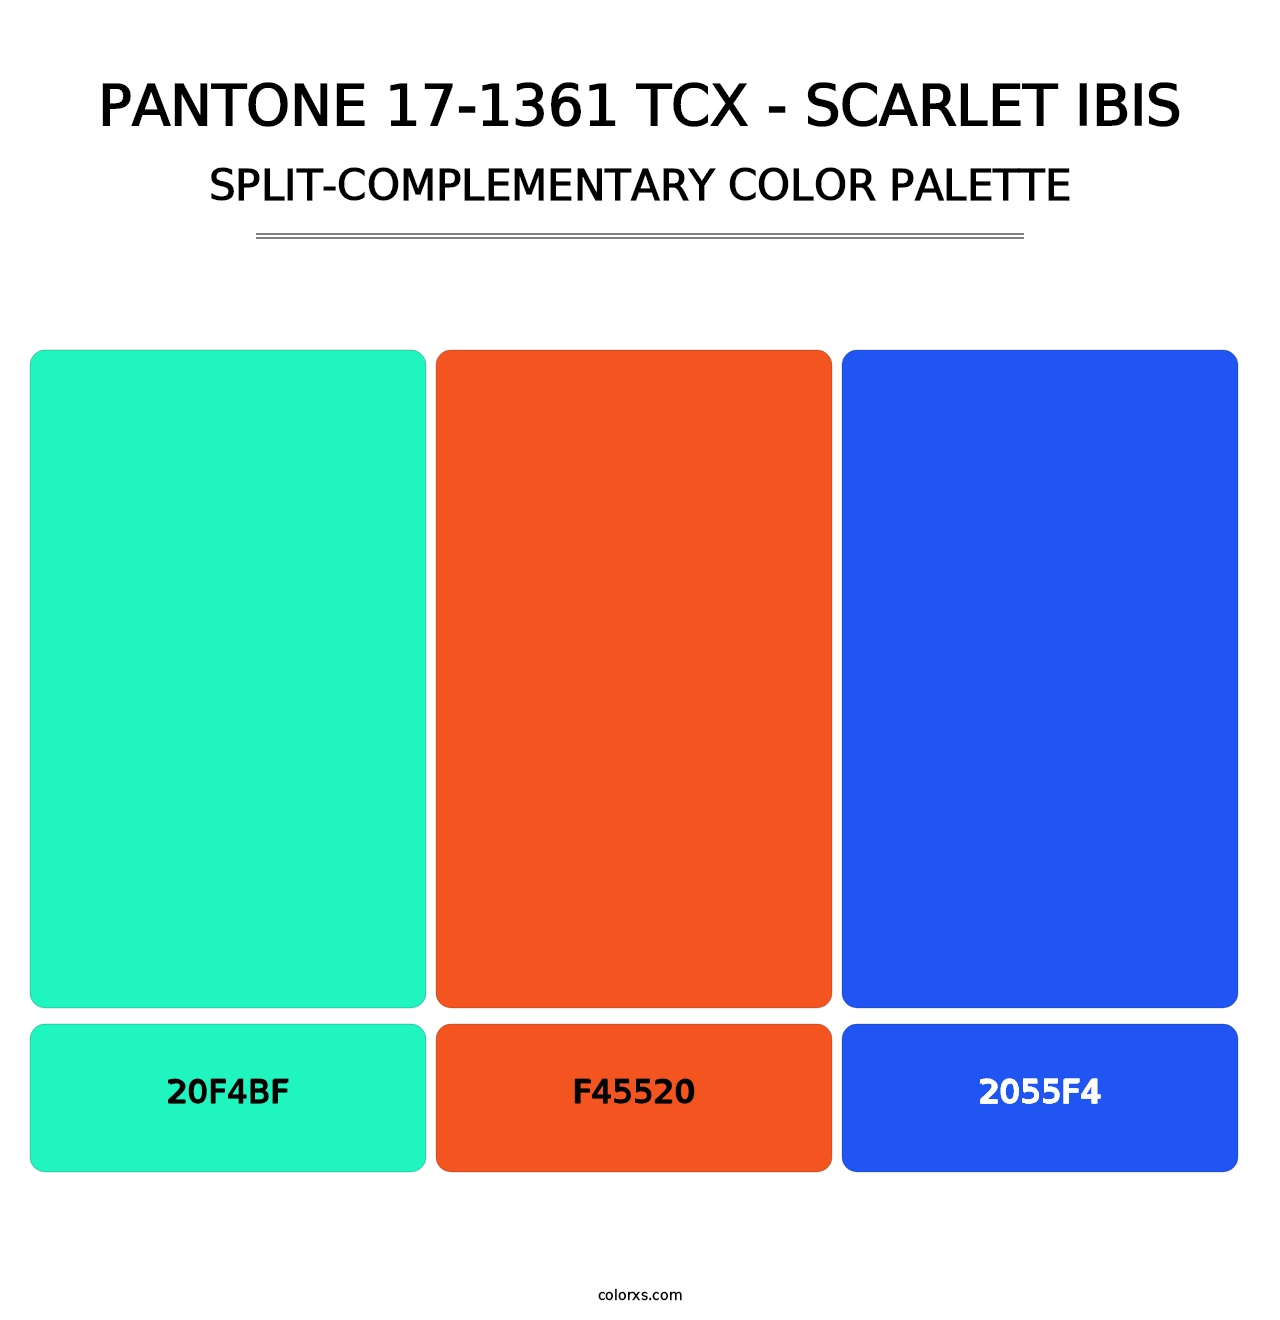 PANTONE 17-1361 TCX - Scarlet Ibis - Split-Complementary Color Palette